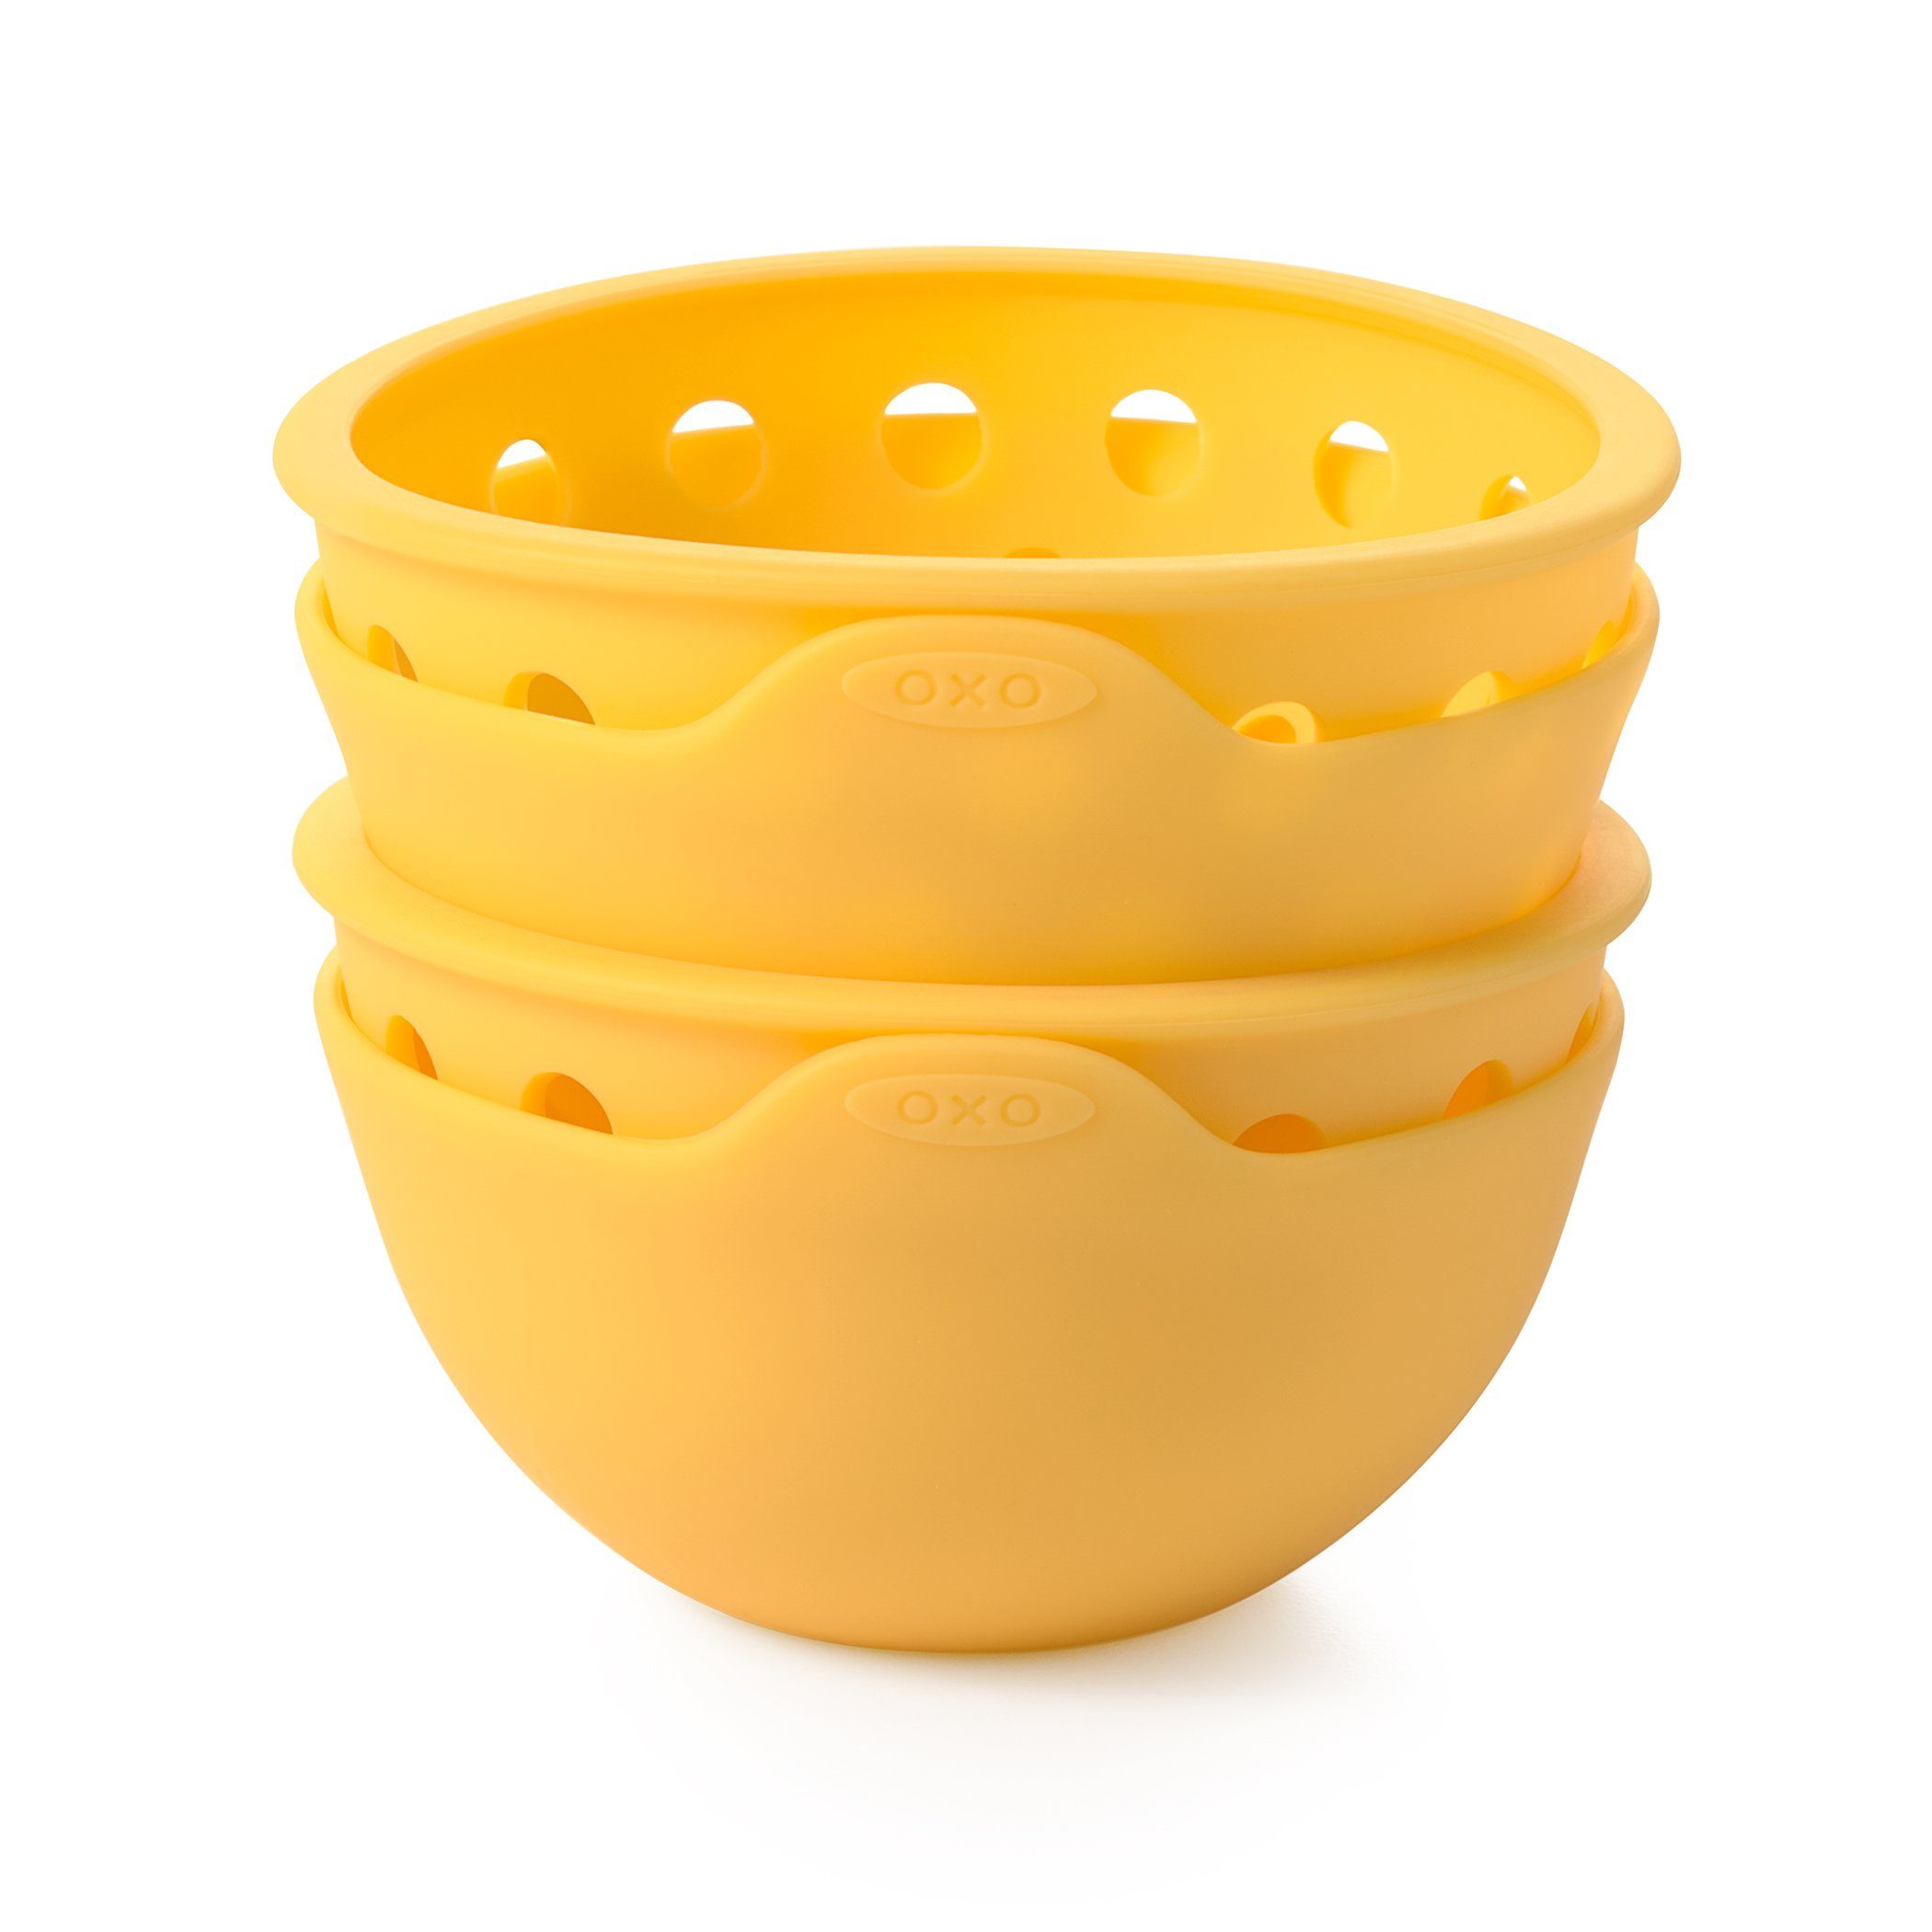 OXO Good Eier-Pochierer Set Good Grips – pochierte 2-teiliges Eier BPA-freiem OXO gelb Avocadotoast aus perfekt und für Eiertrenner Silikon, mehr Grips